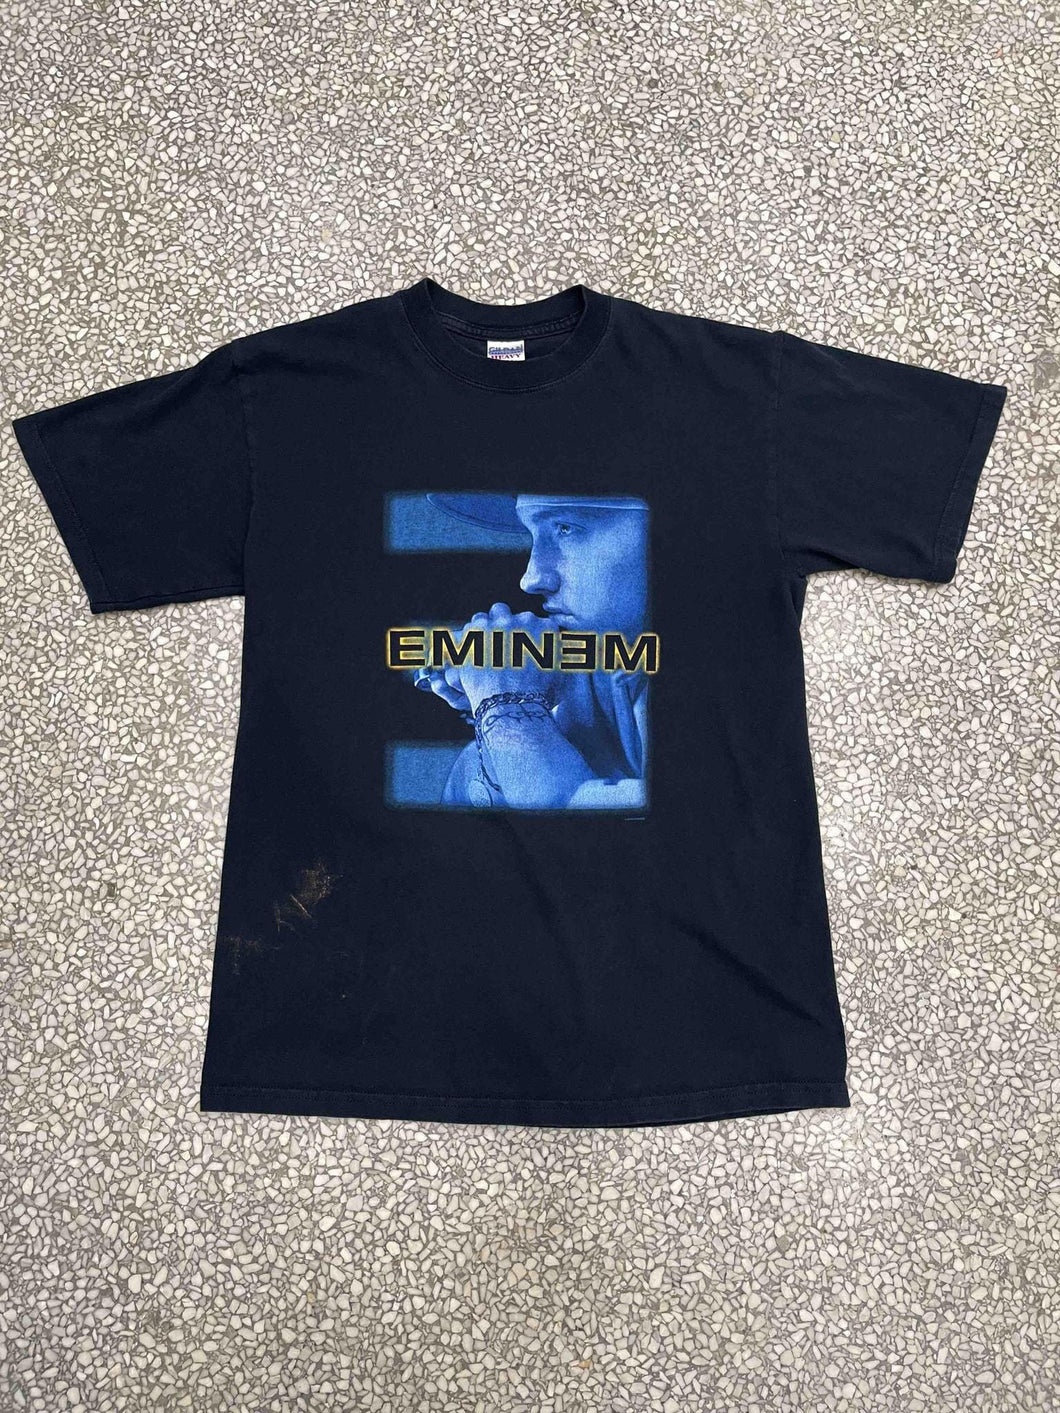 Eminem Vintage 2004 Rap Tee Black ABC Vintage 